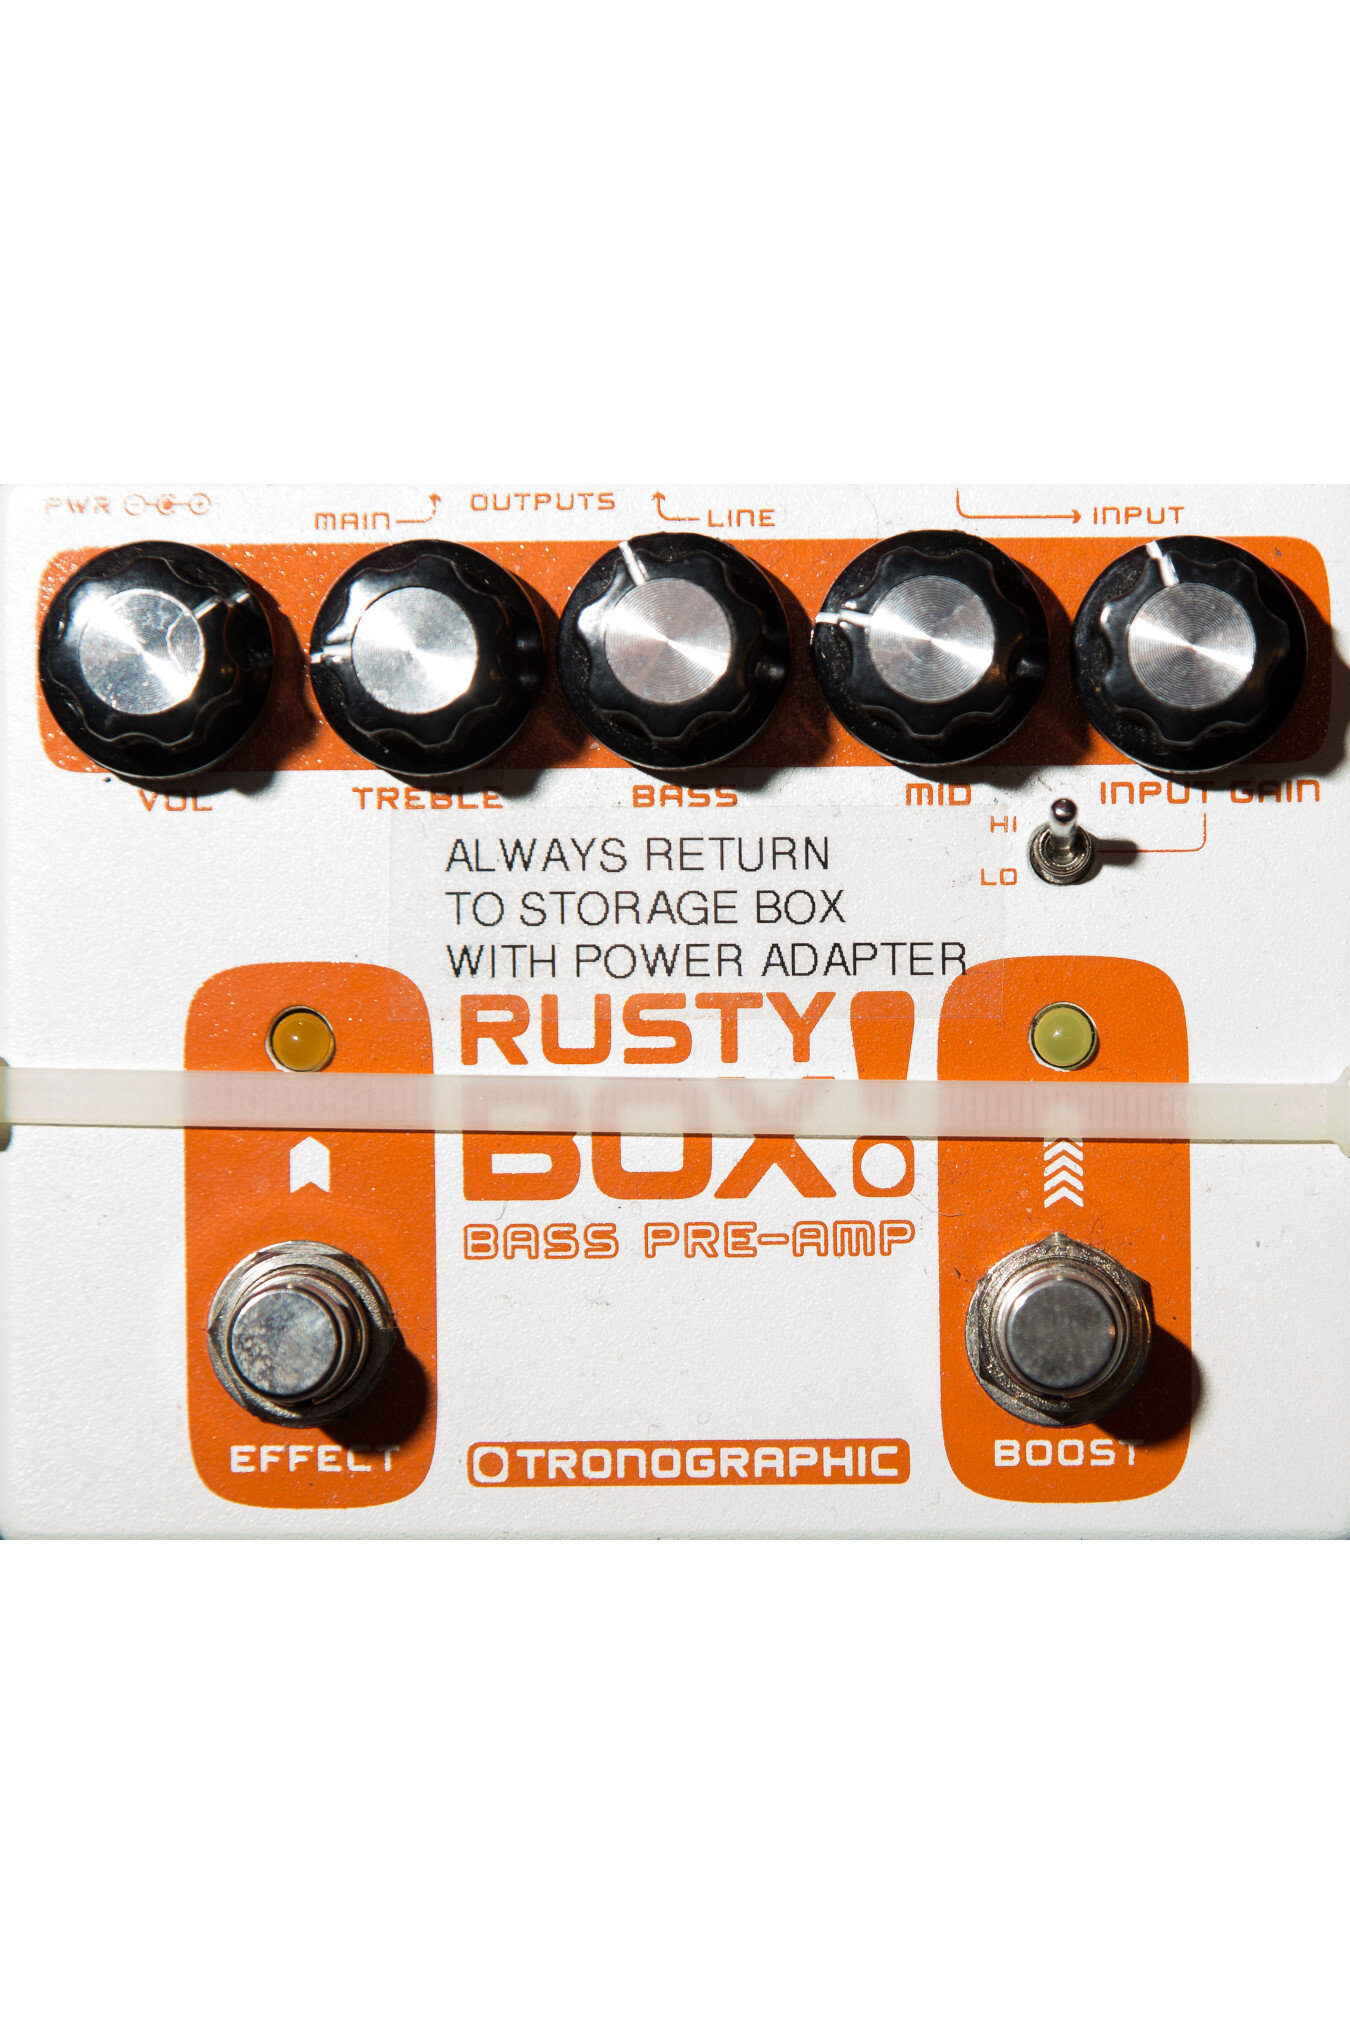 Picasso continuar Conquistador Tronographic Rusty Box Bass Preamp — Electrical Audio